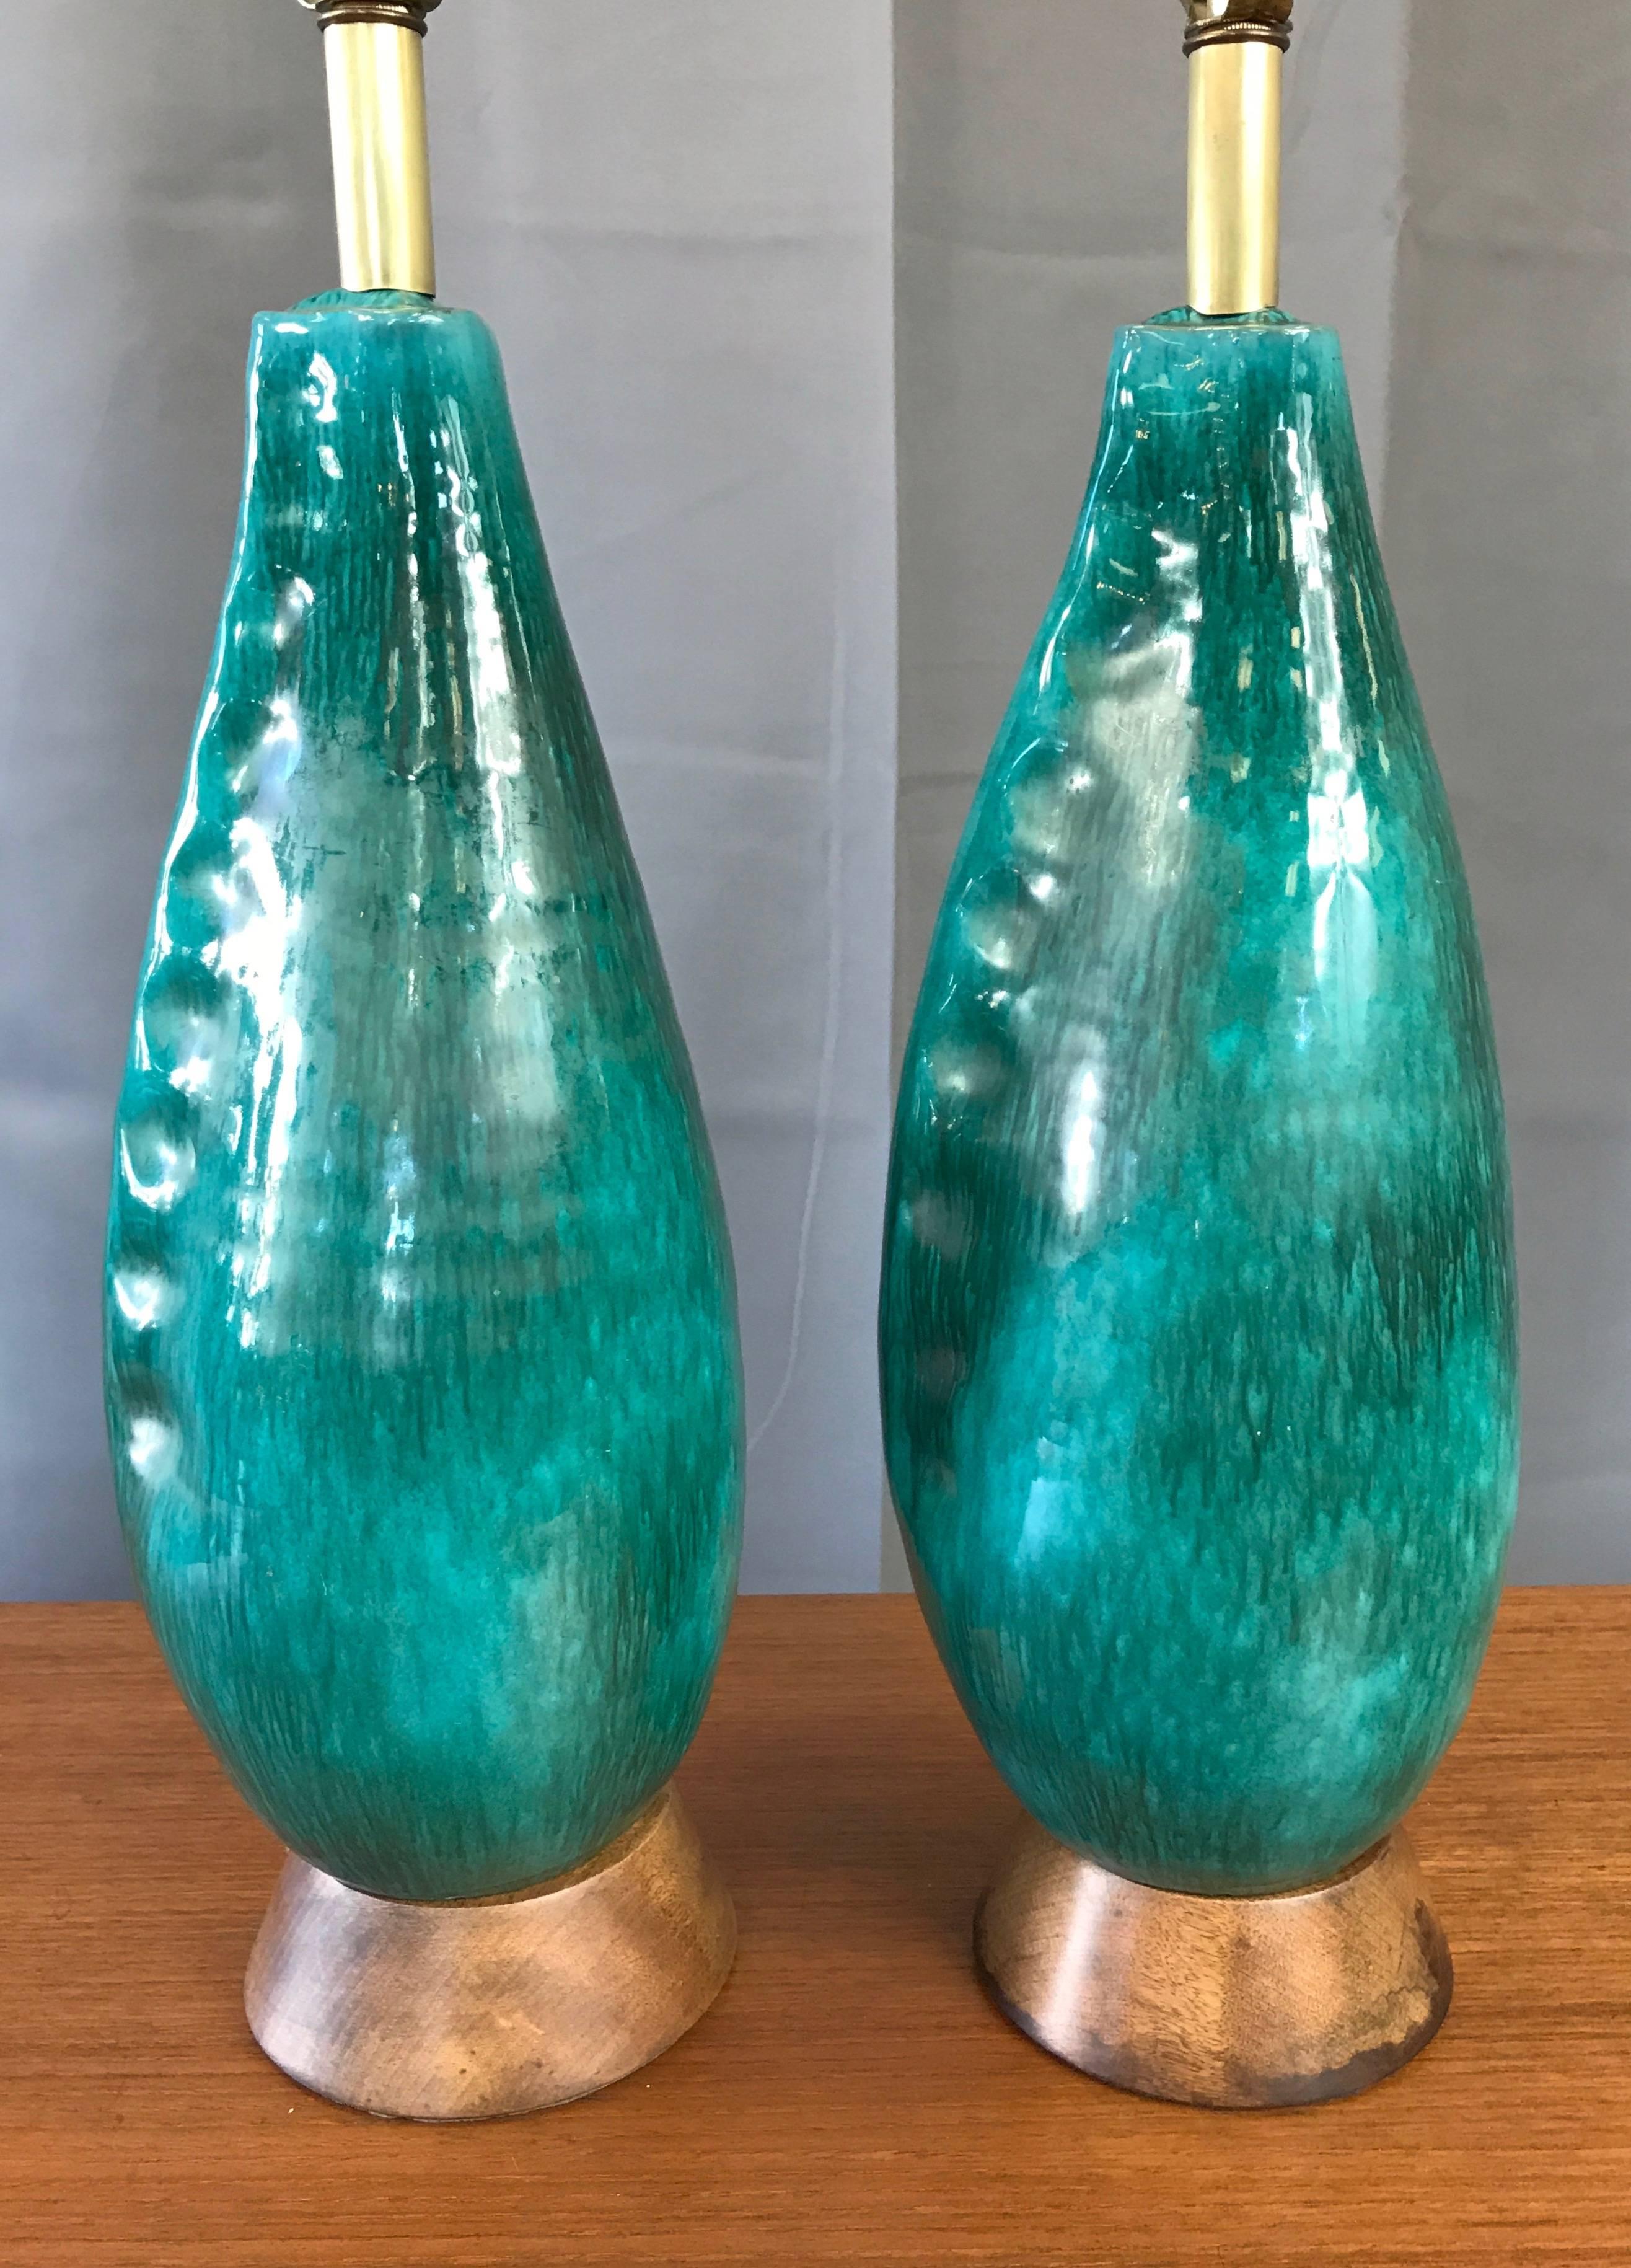 Italian Pair of Marcello Fantoni Turquoise Ceramic Table Lamps